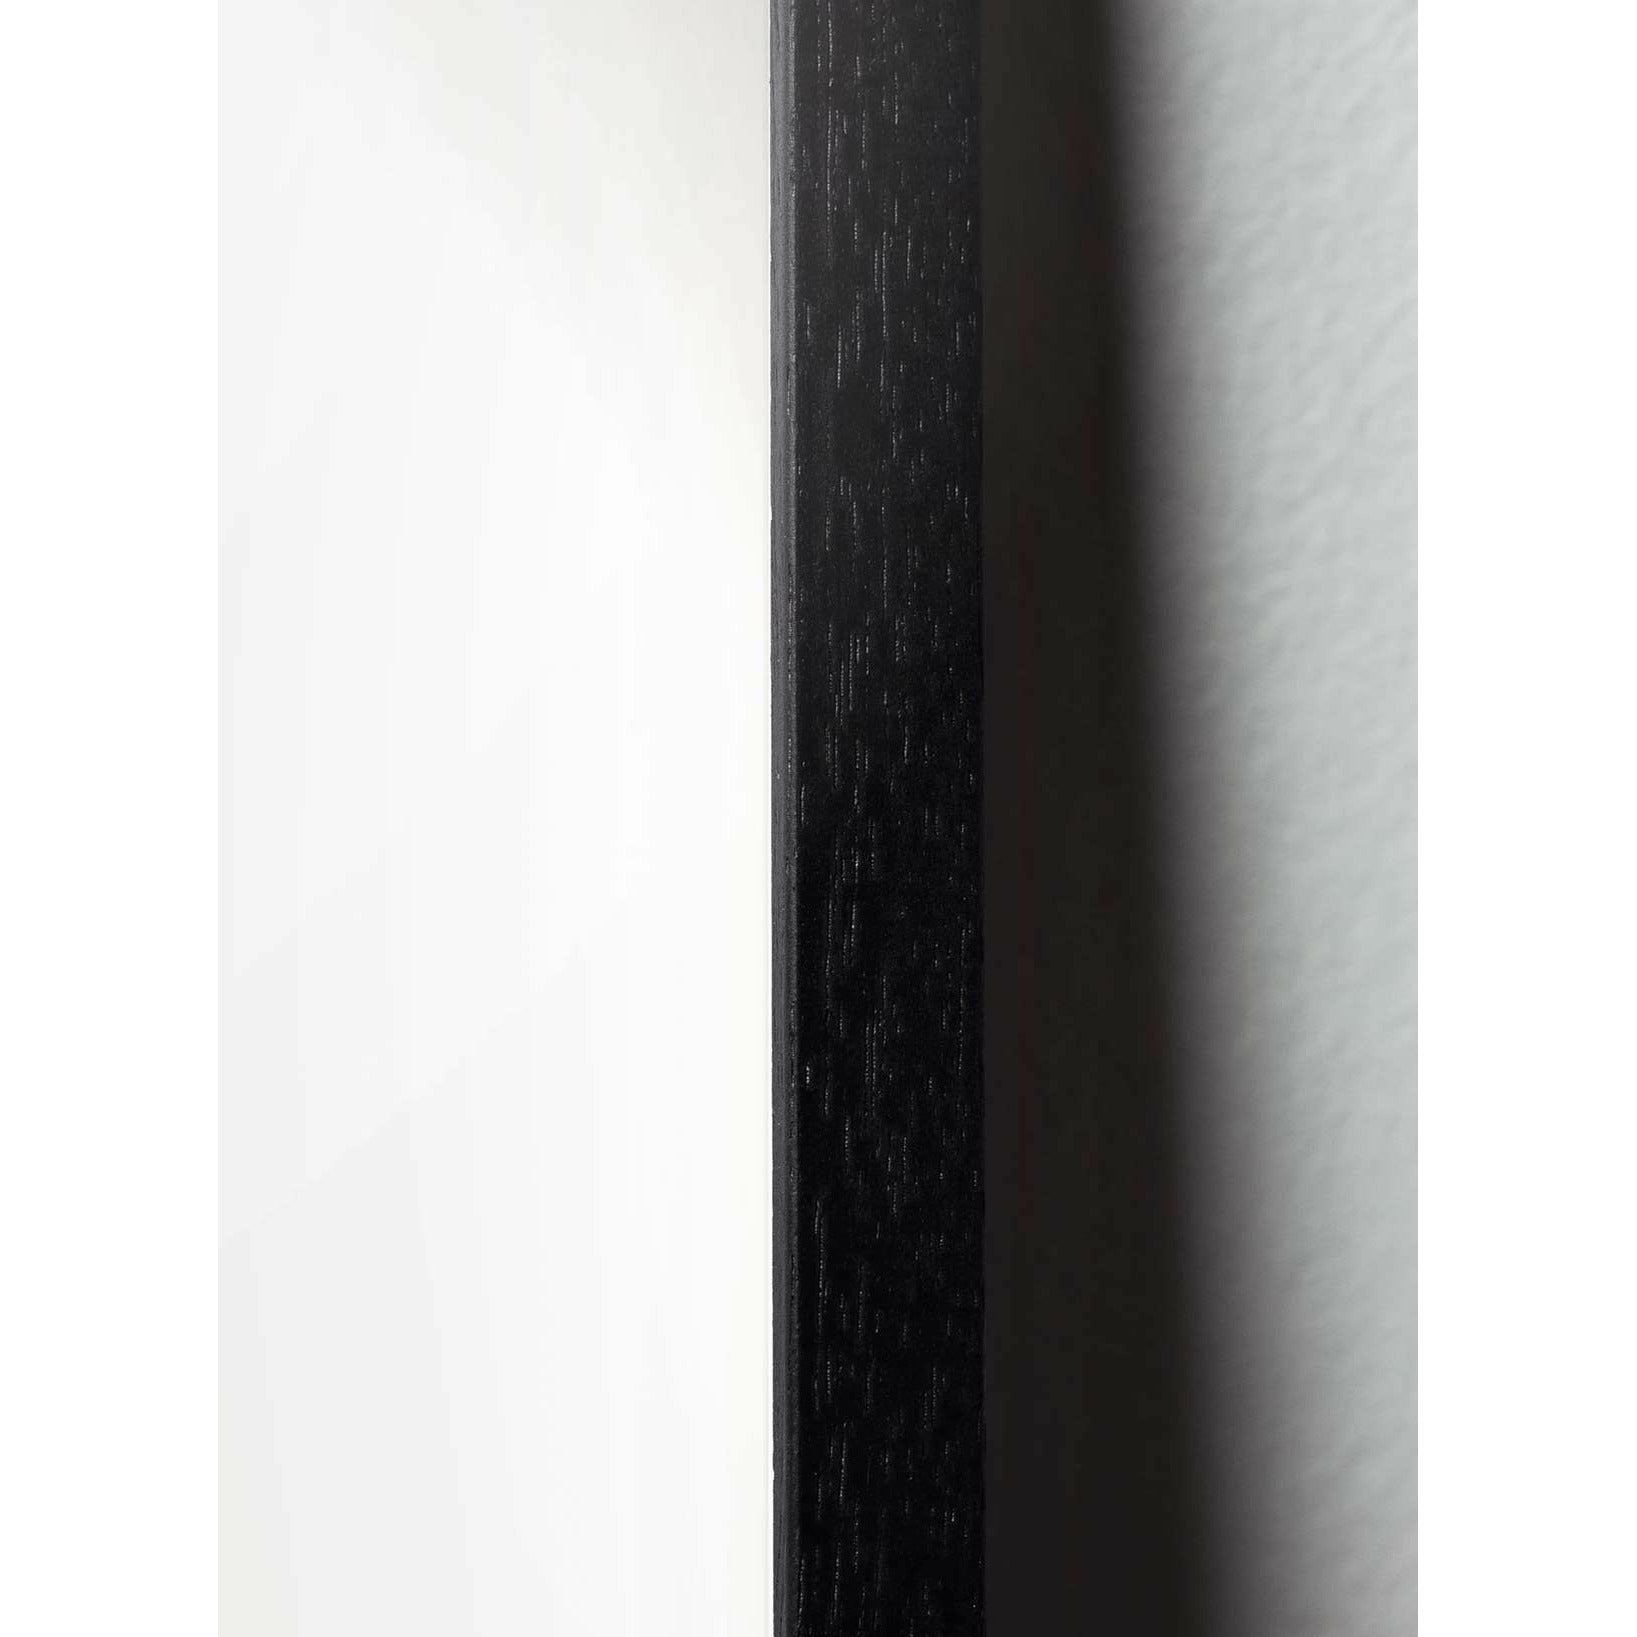 Pomysły plakat linii jaj, rama w czarnym lakierowanym drewnie 30x40 cm, białe tło